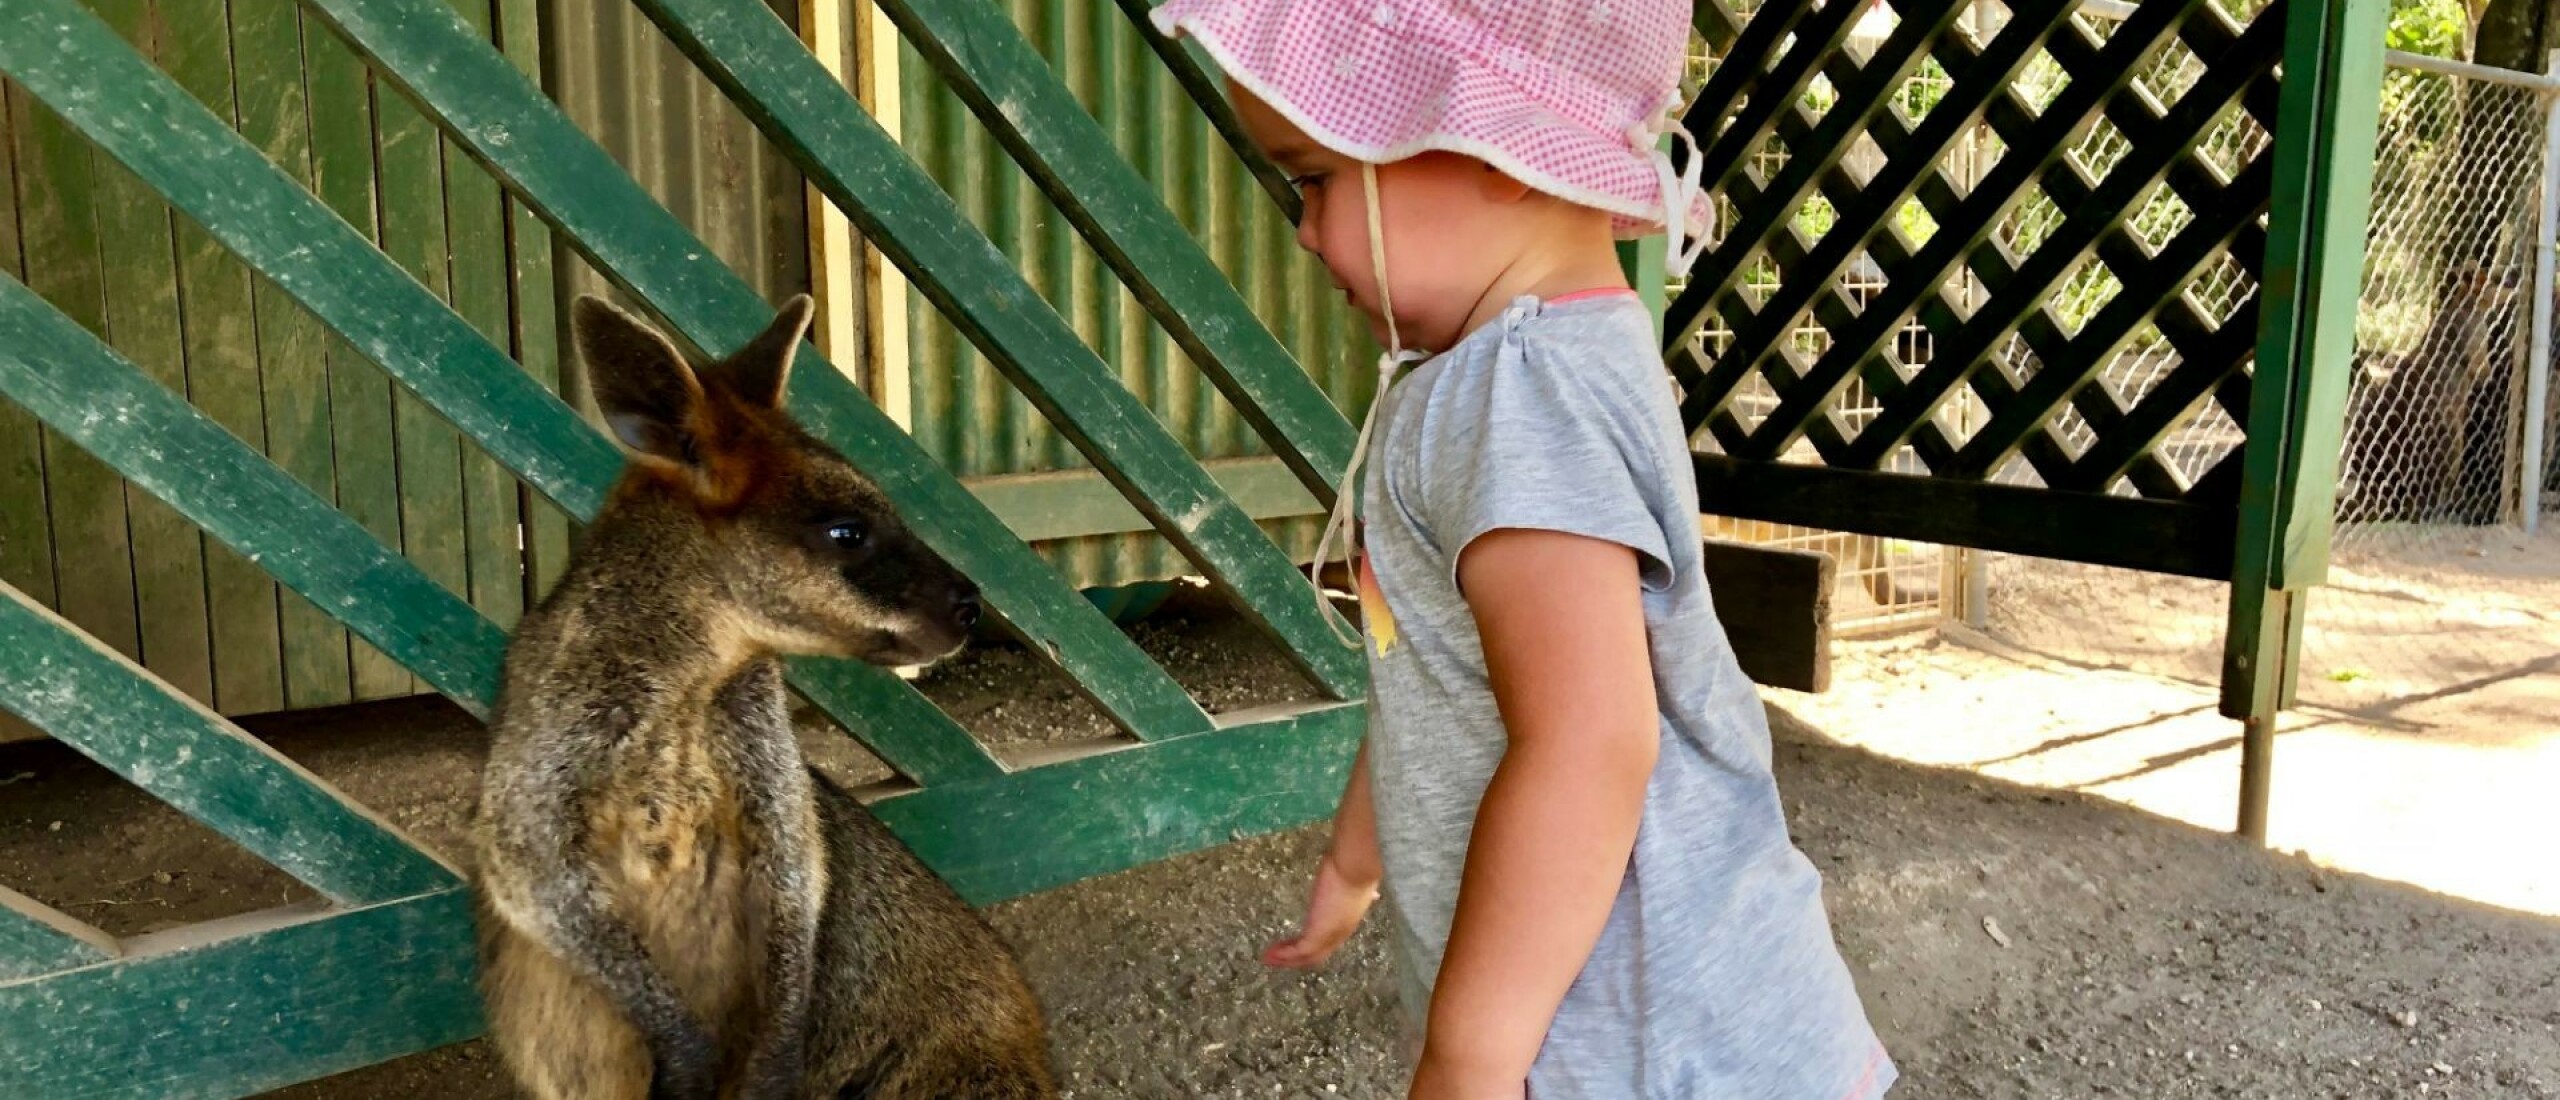 Een kindvriendelijke tussenstop in Port Macquarie